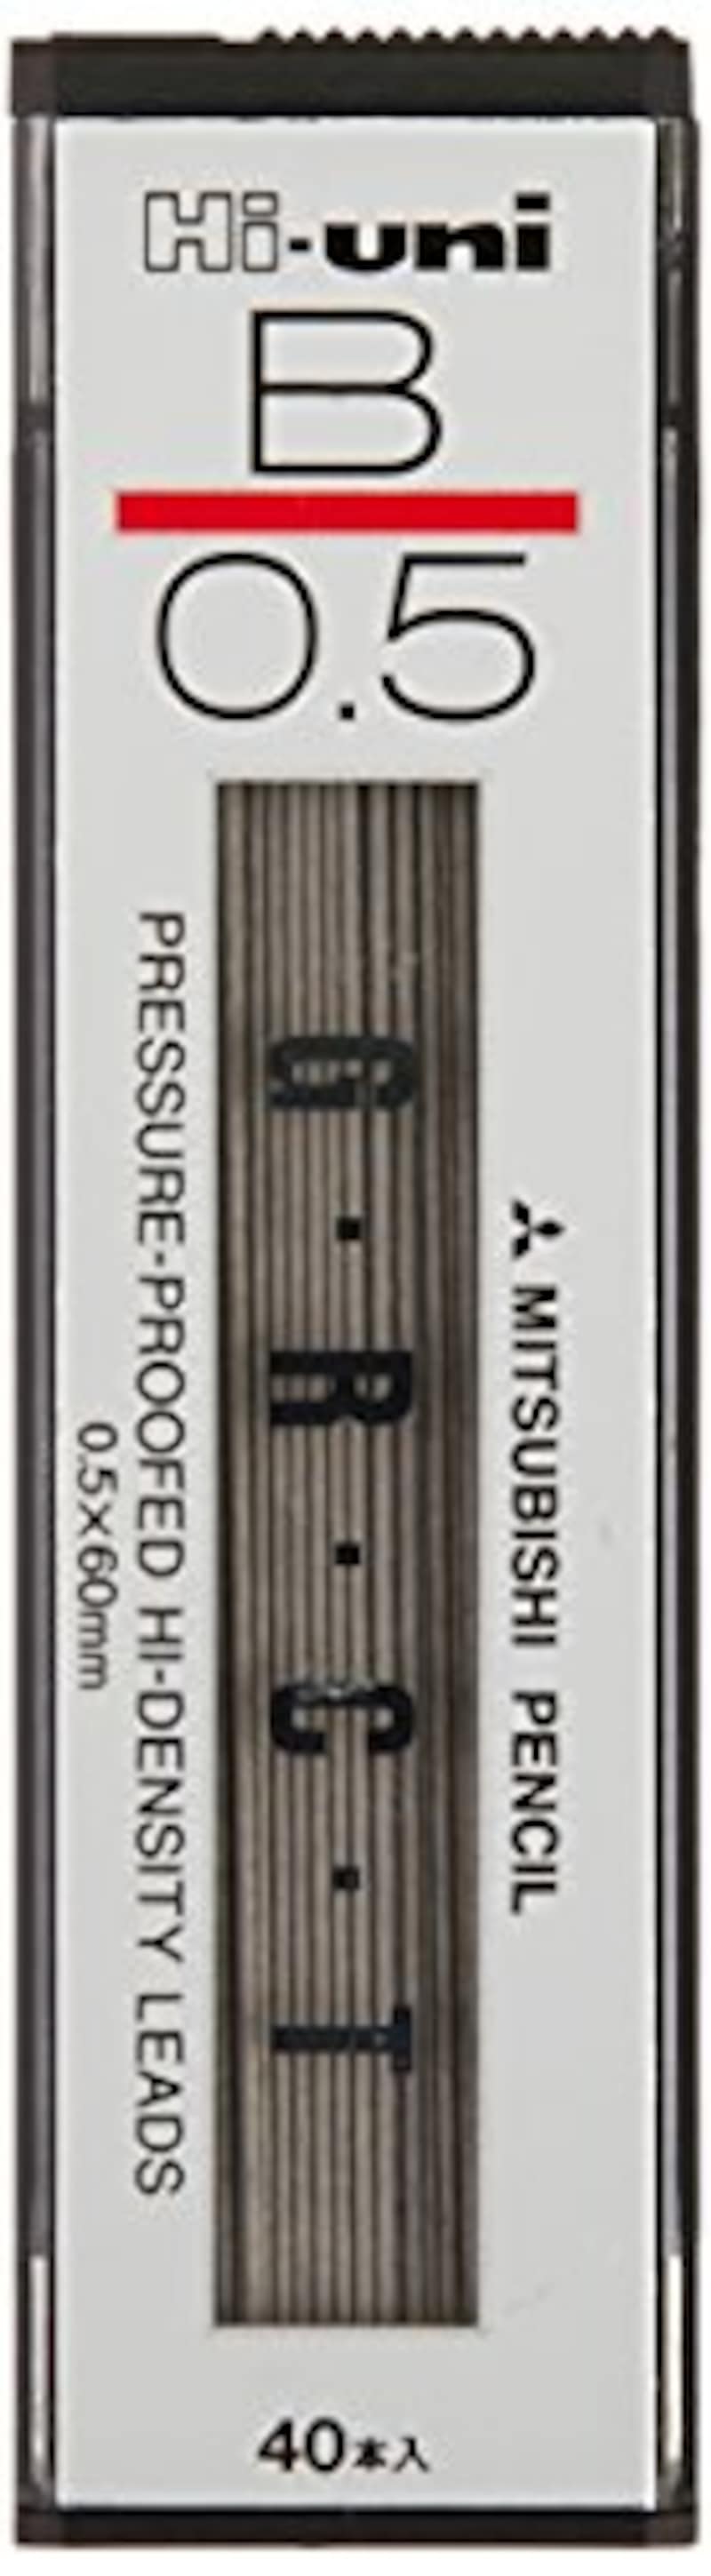 三菱鉛筆,替芯 Hi-uni 0.5mm B,HU05300B